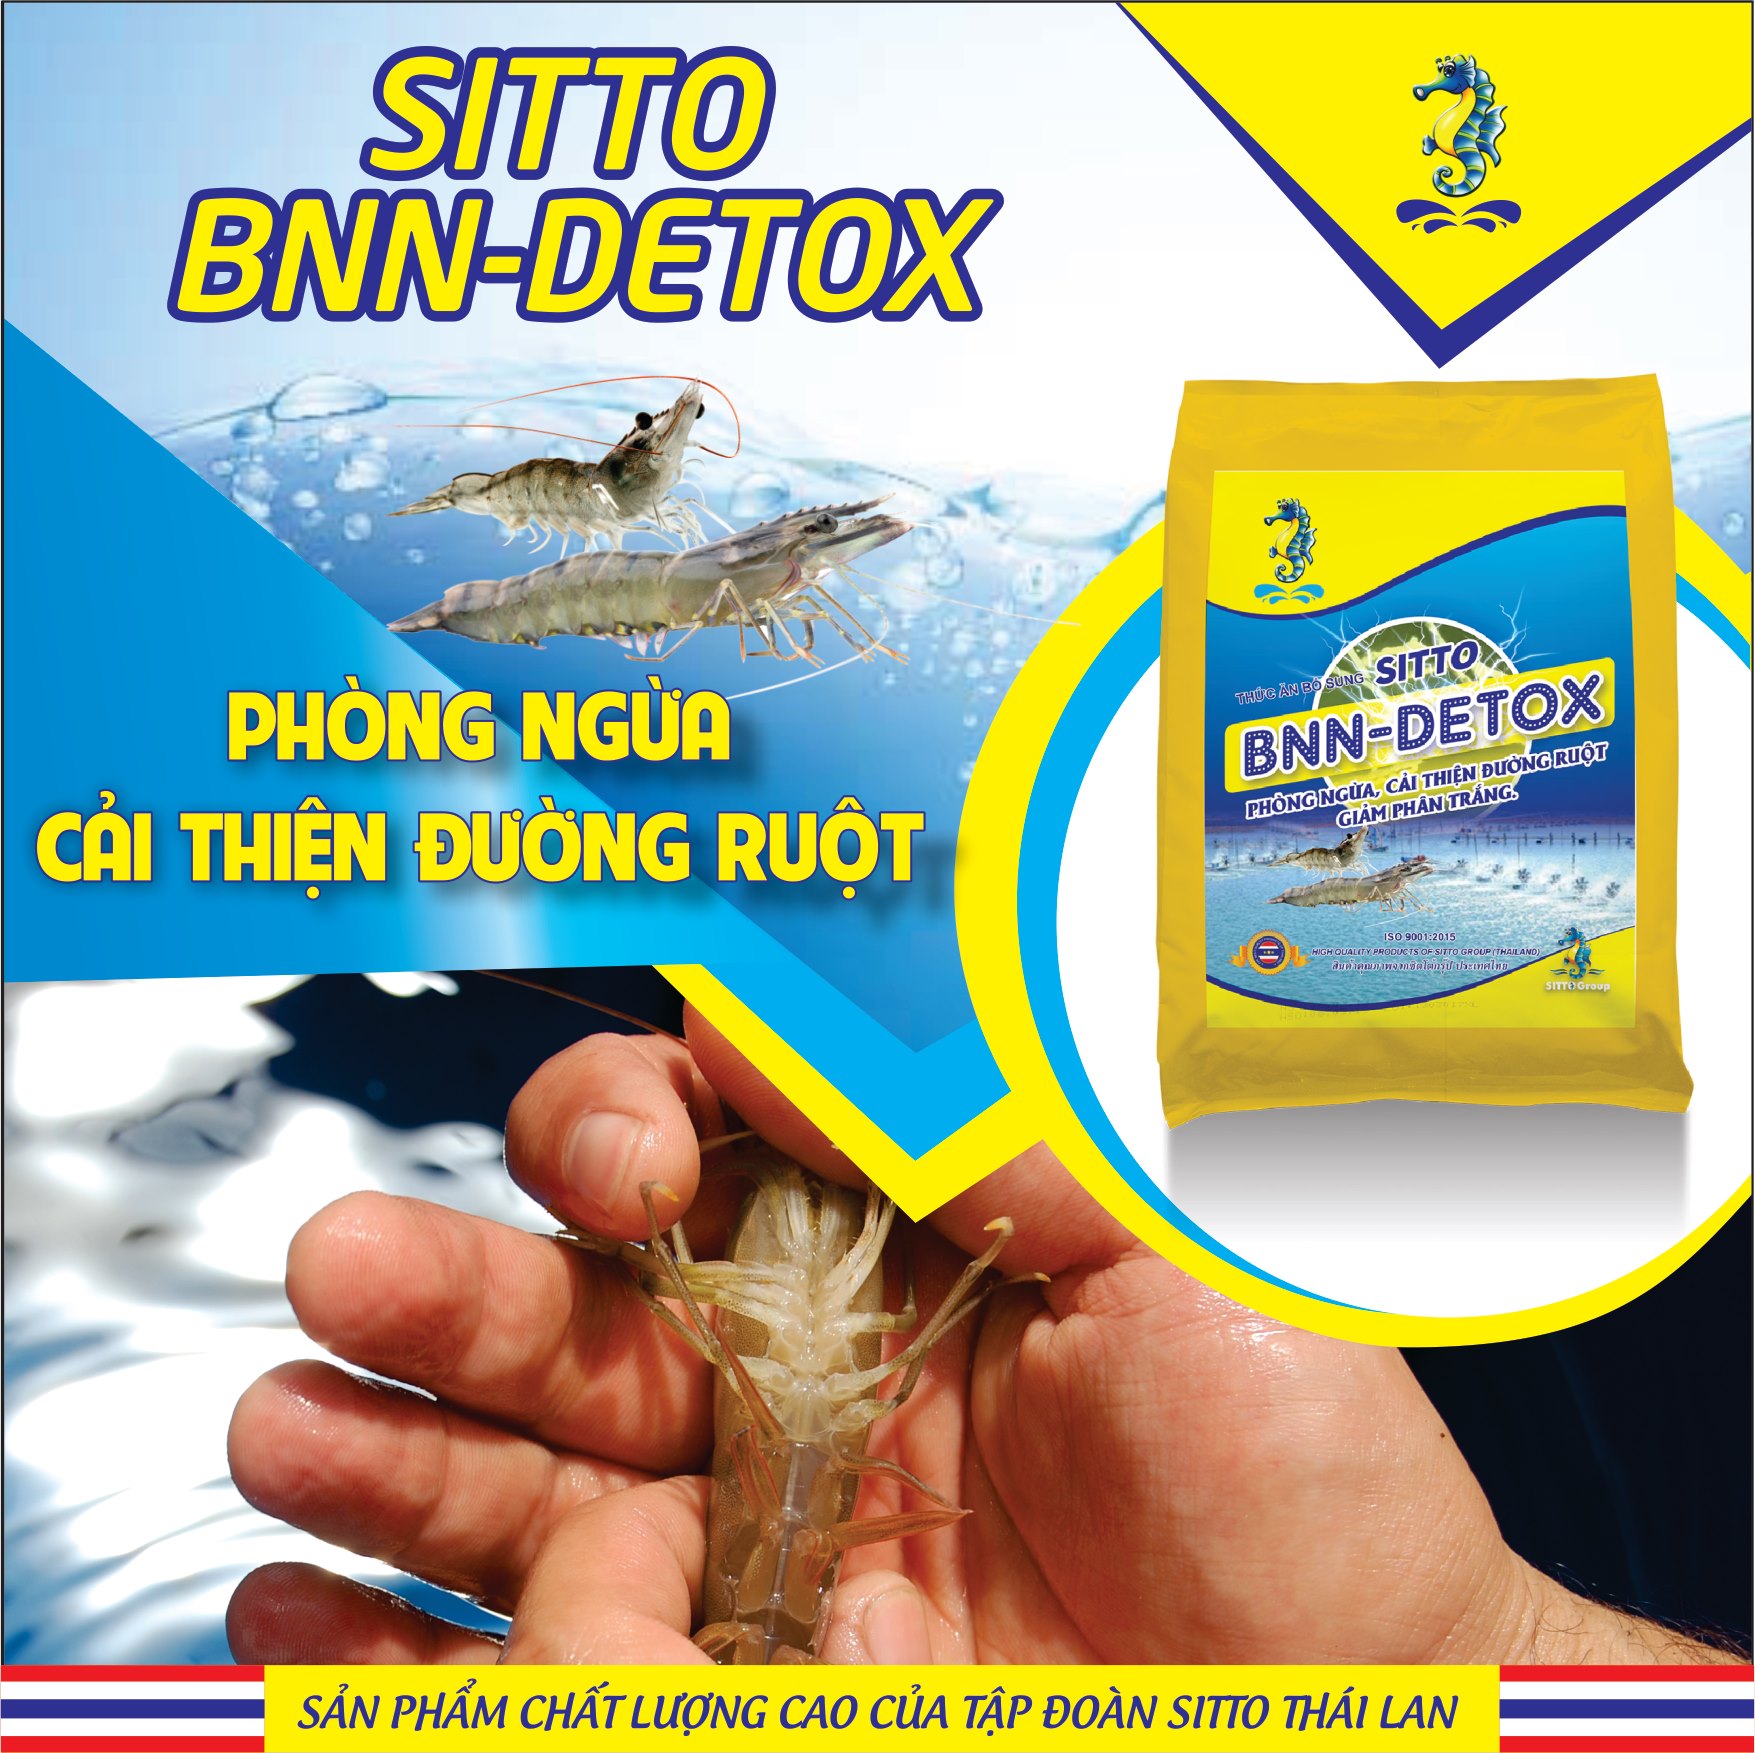 Sản phẩm Dinh dưỡng bổ sung - Sitto BNN-Detox (Gói 500g) - Phòng ngừa cải thiện đường ruột